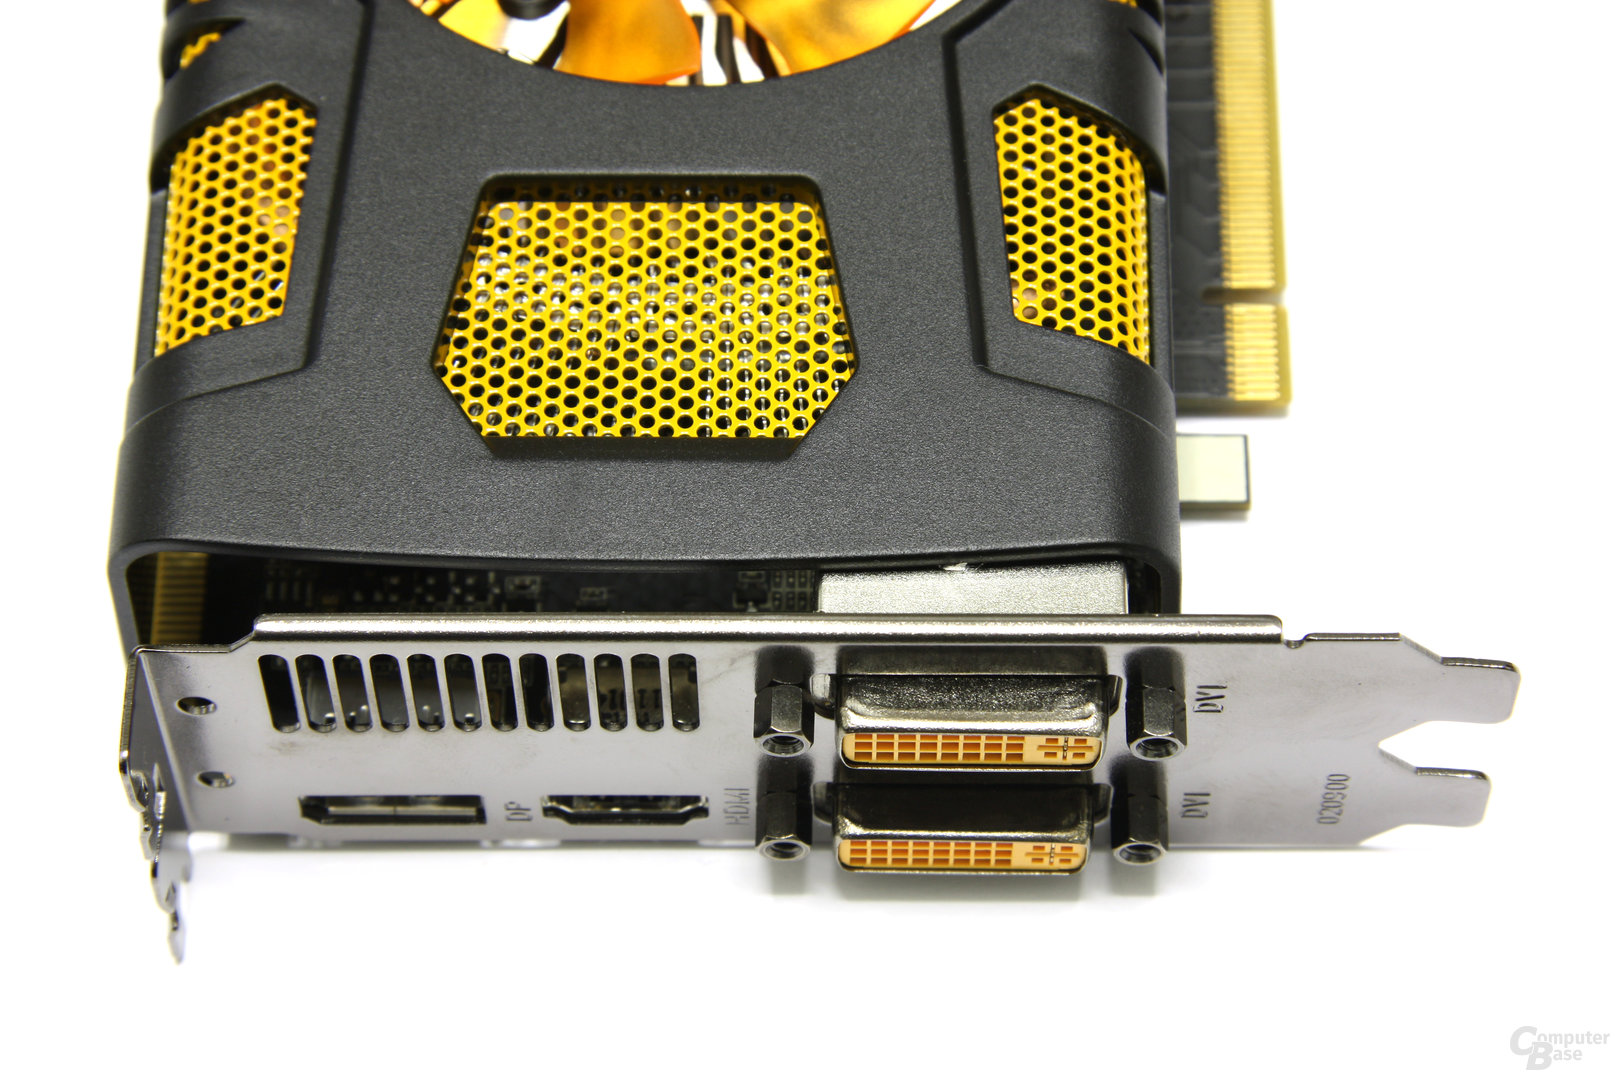 GeForce GTX 560 Ti Anschlüsse